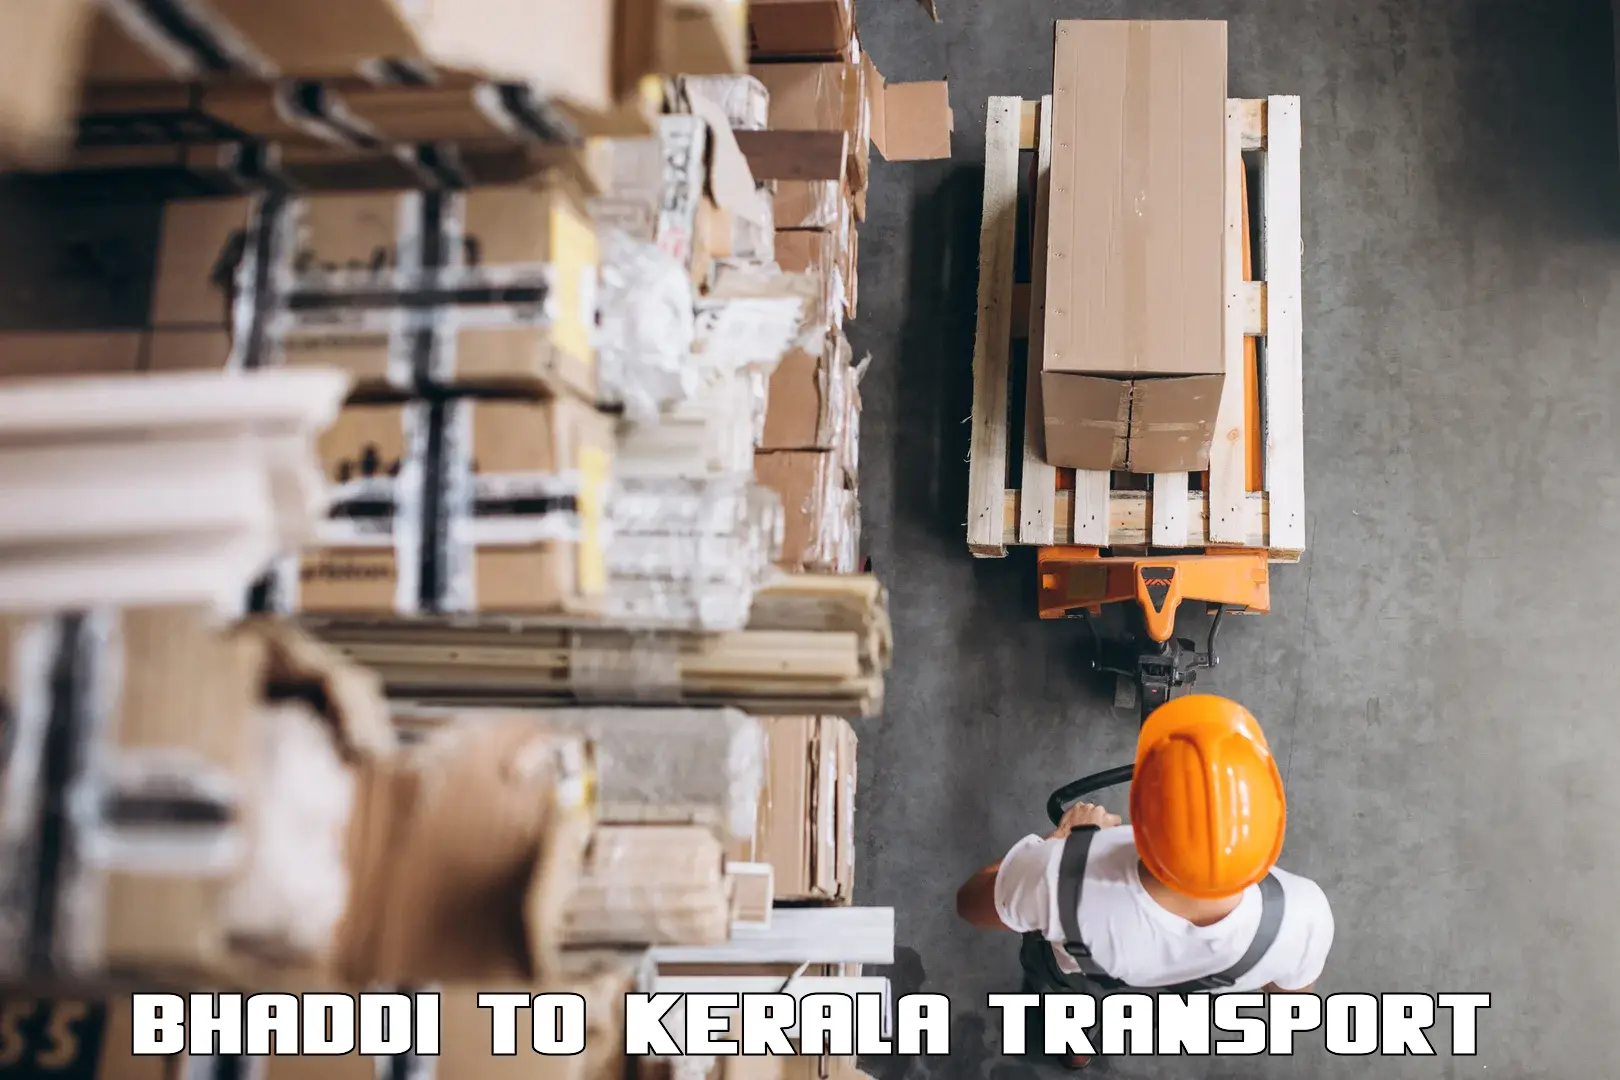 Lorry transport service Bhaddi to Kallikkad